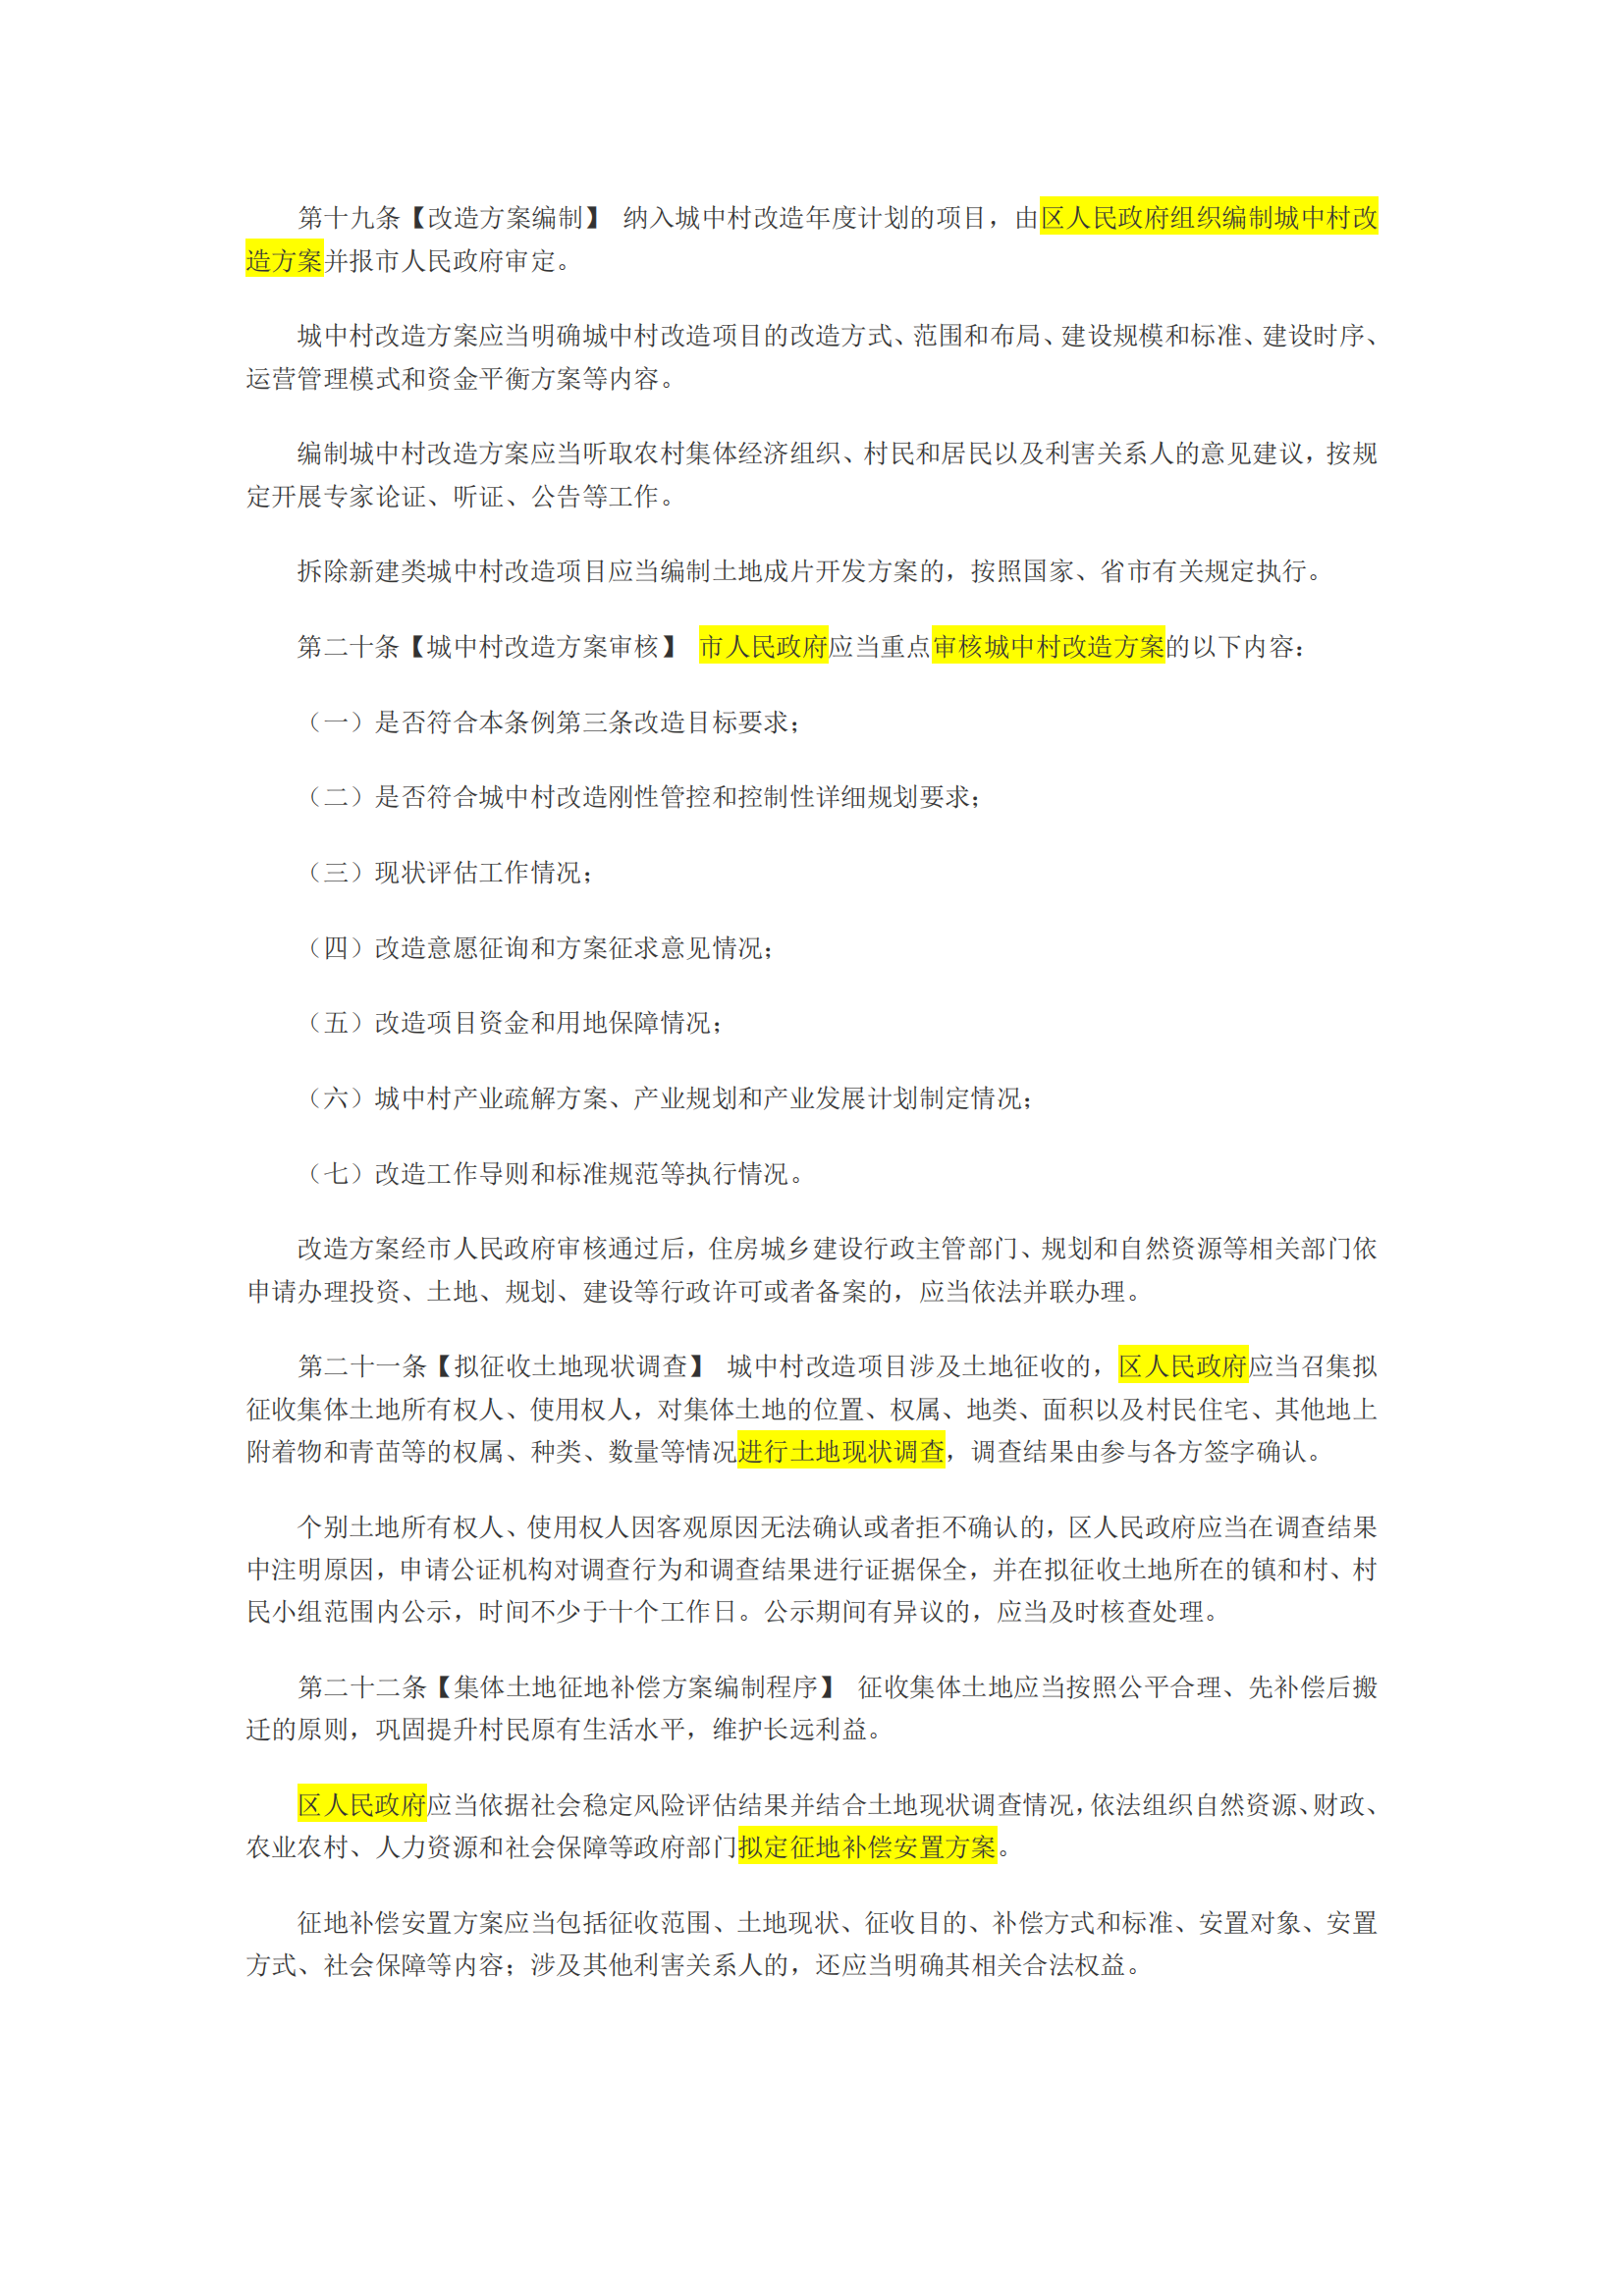 广州市城中村改造条例(征求意见稿，批注版)_03.png